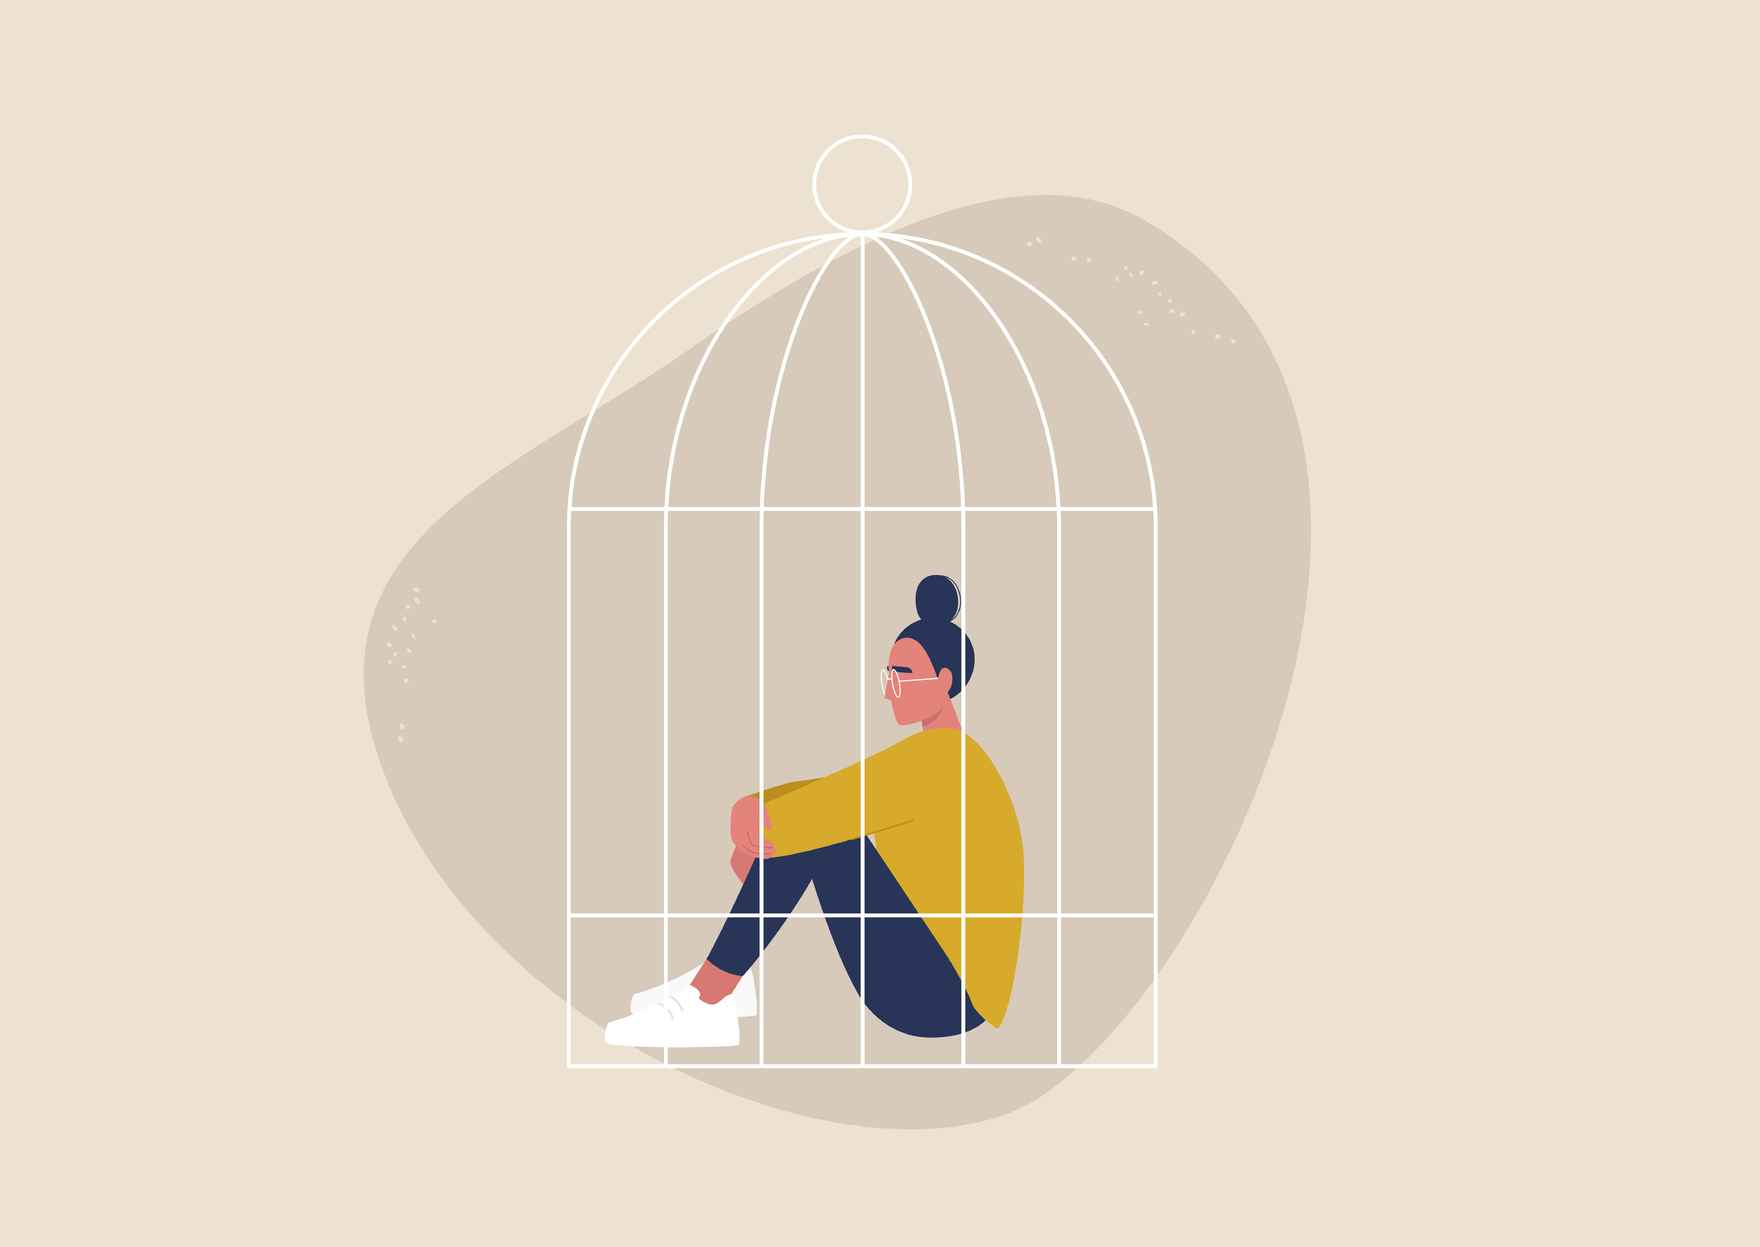 Kvinde i fuglebur - mentalt eller følelsesmæssigt fængsel